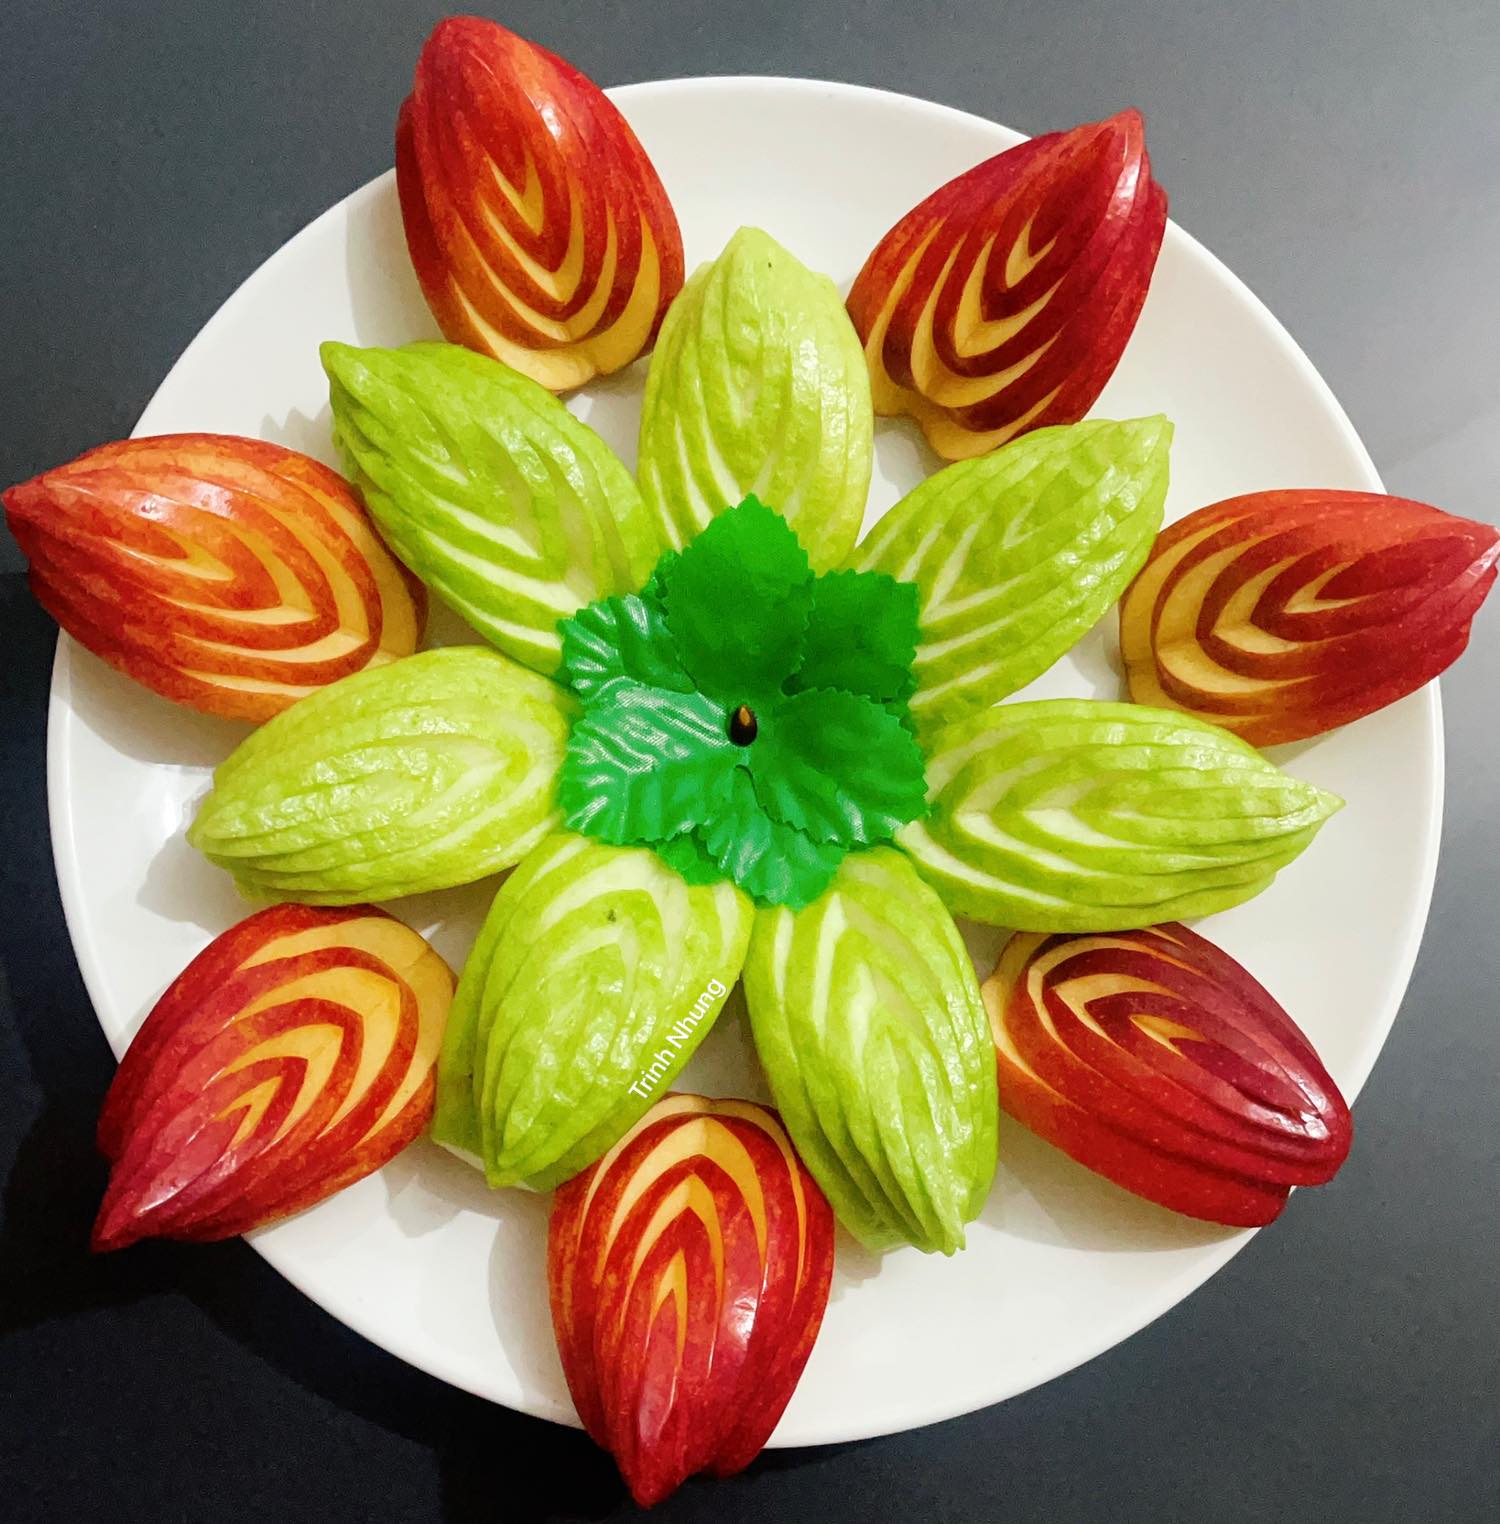 Tỉa rau củ quả: Không chỉ có trái cây mà những loại rau củ quả cũng có thể trở thành tác phẩm nghệ thuật đẹp mắt, chúng khiến cho bữa ăn trở nên đầy màu sắc, hấp dẫn hơn bao giờ hết.